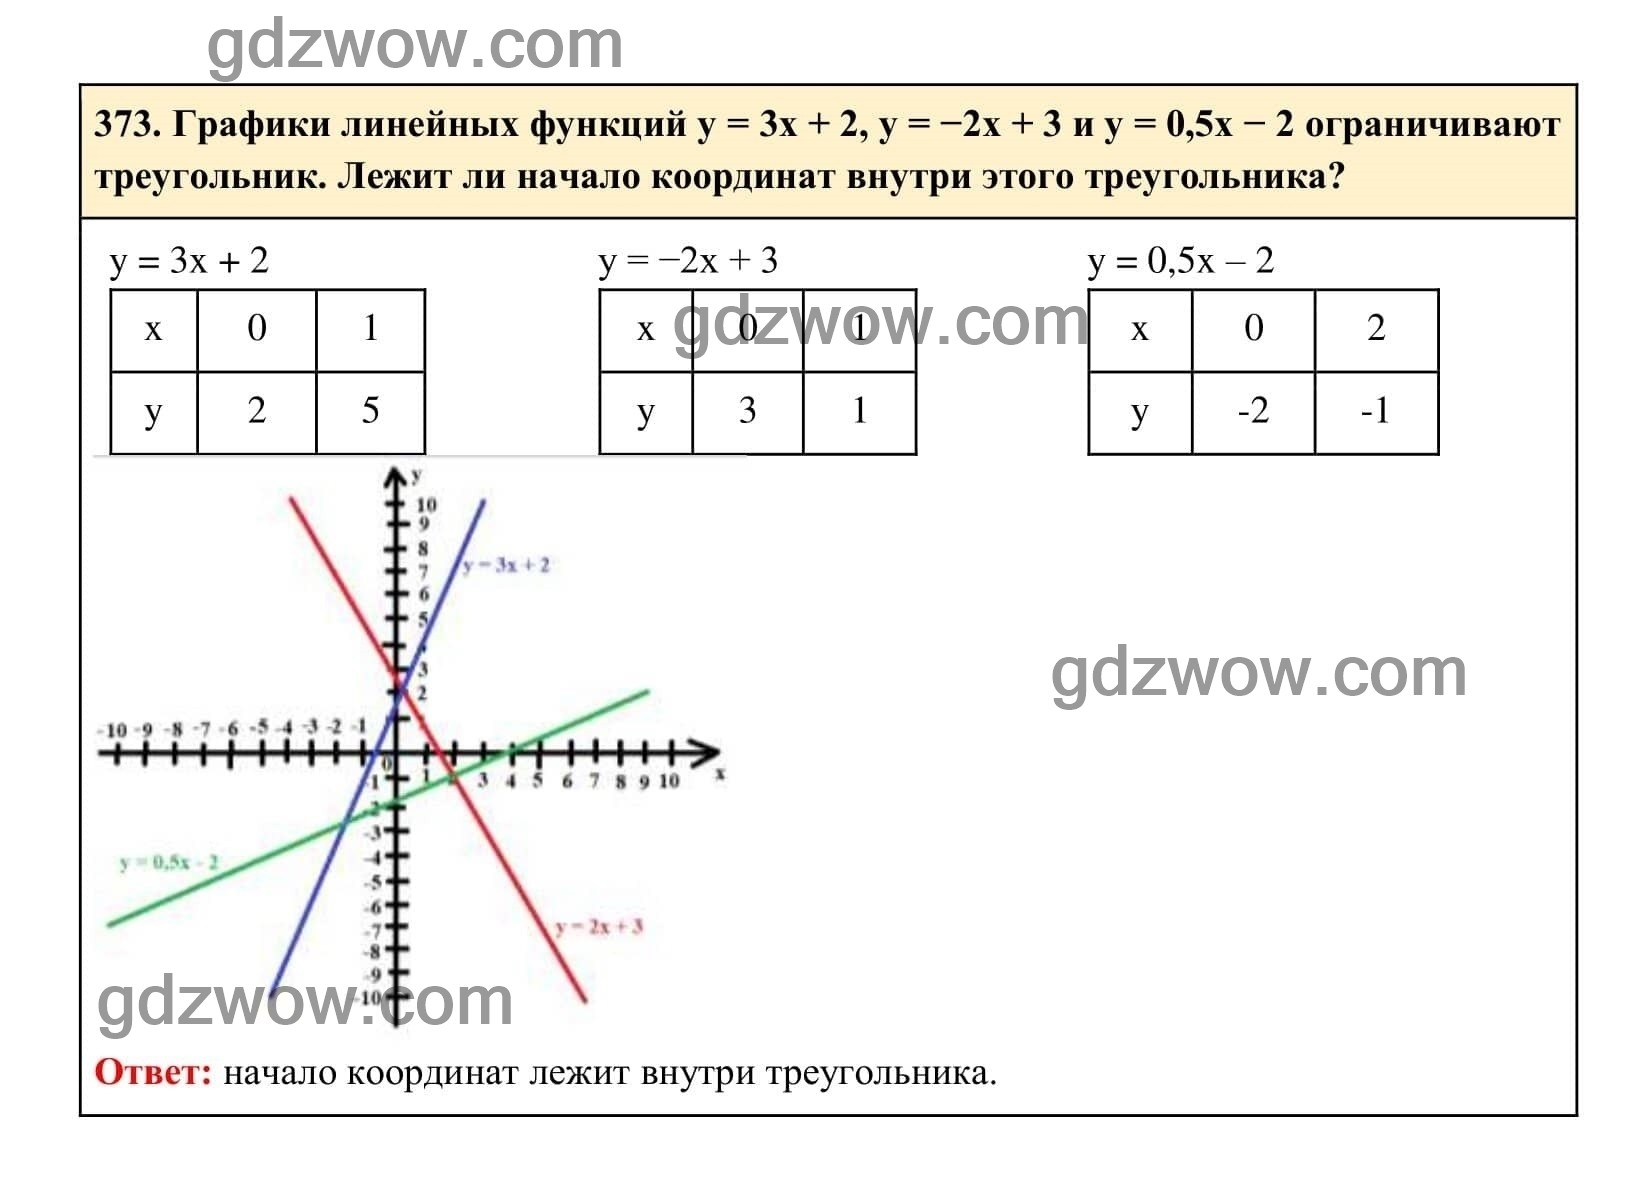 Упражнение 373 - ГДЗ по Алгебре 7 класс Учебник Макарычев (решебник) - GDZwow